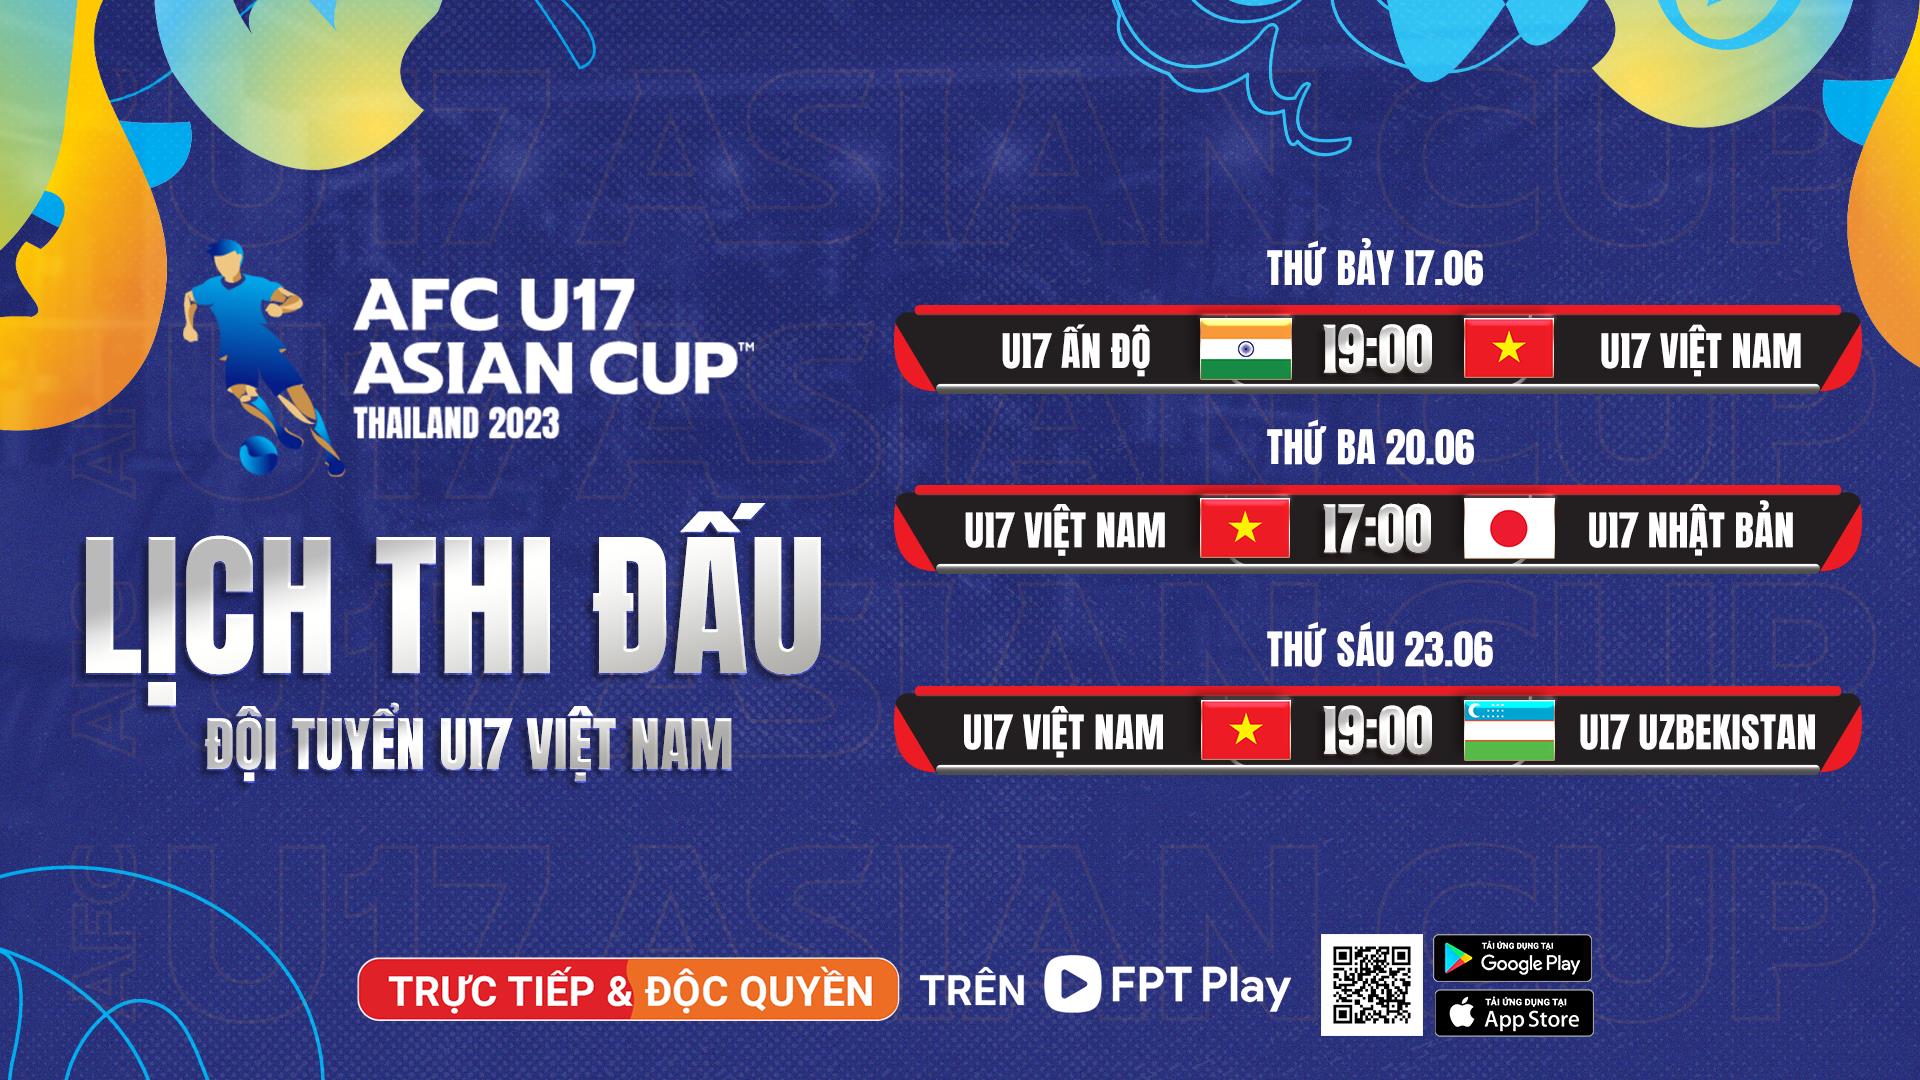 Xem AFC U17 Asian Cup 2023 độc quyền trên FPT Play - Ảnh 3.